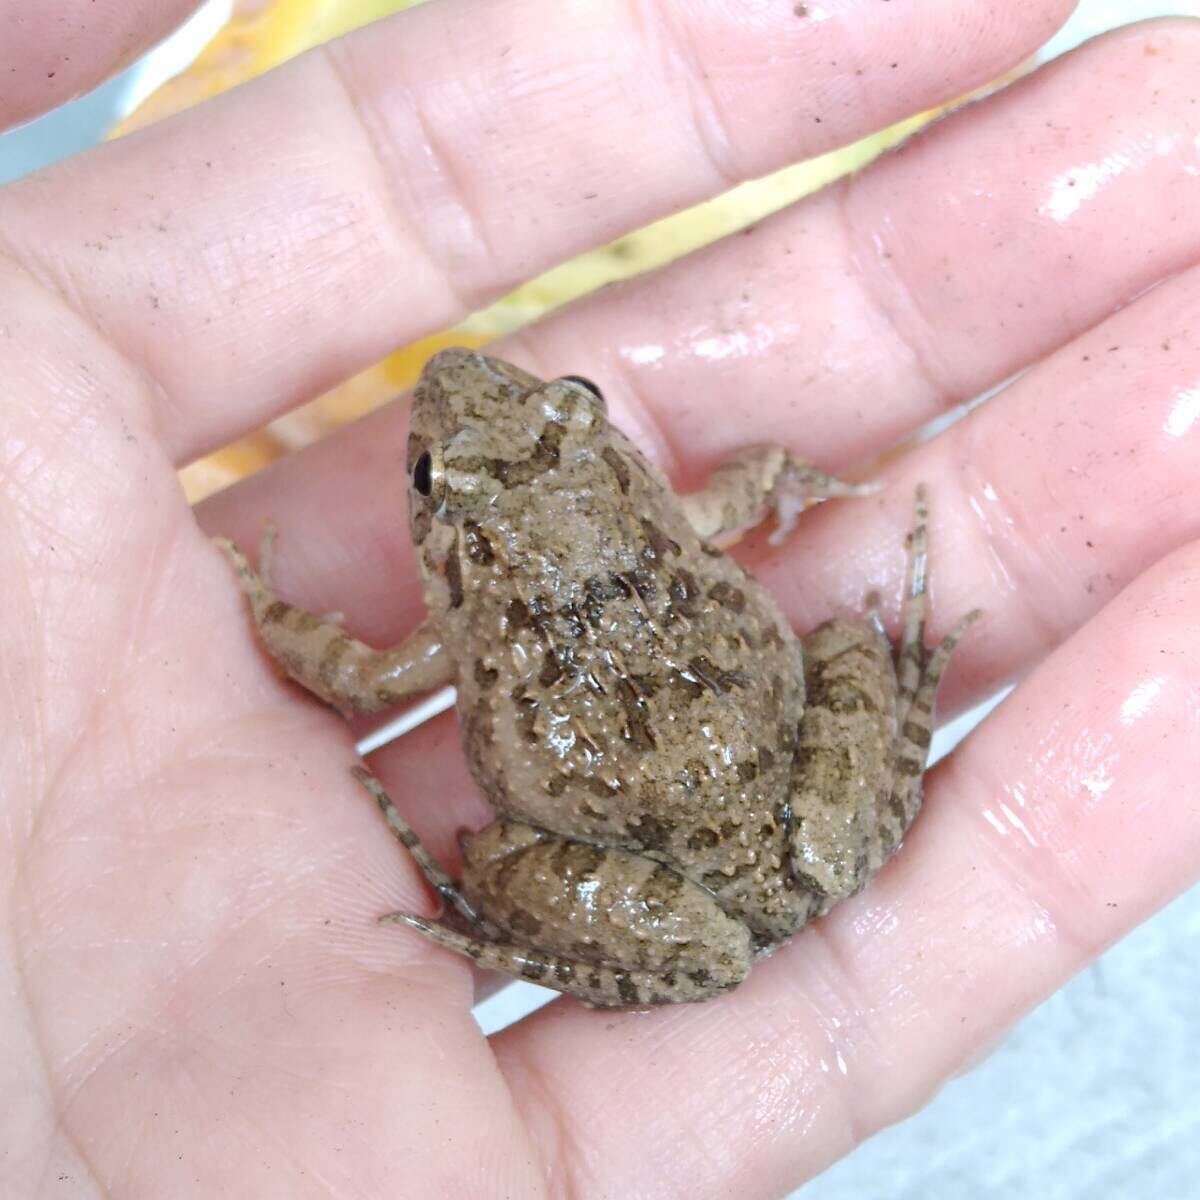 [M*10 pcs +α] bait bait for frog . bait approximately 3~4cmnmaga L feed for .. taking kerolium reptiles .. bait snake. bait ... bait CB